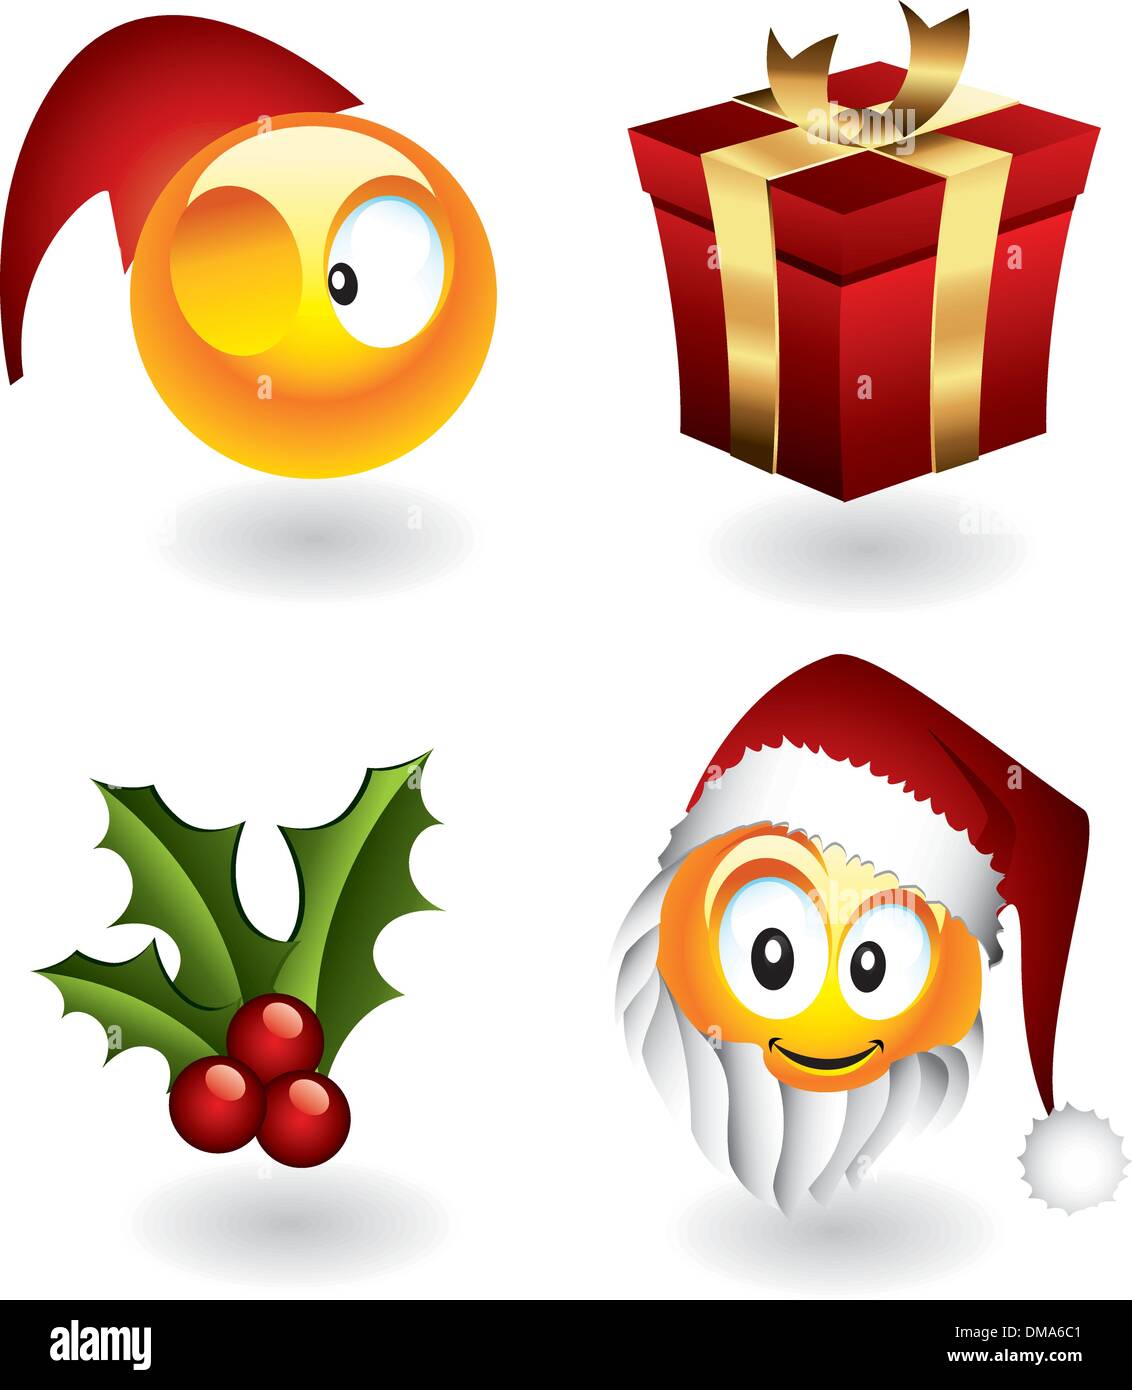 Emoticon Di Natale.Emoticons Christmas Immagini E Fotos Stock Alamy